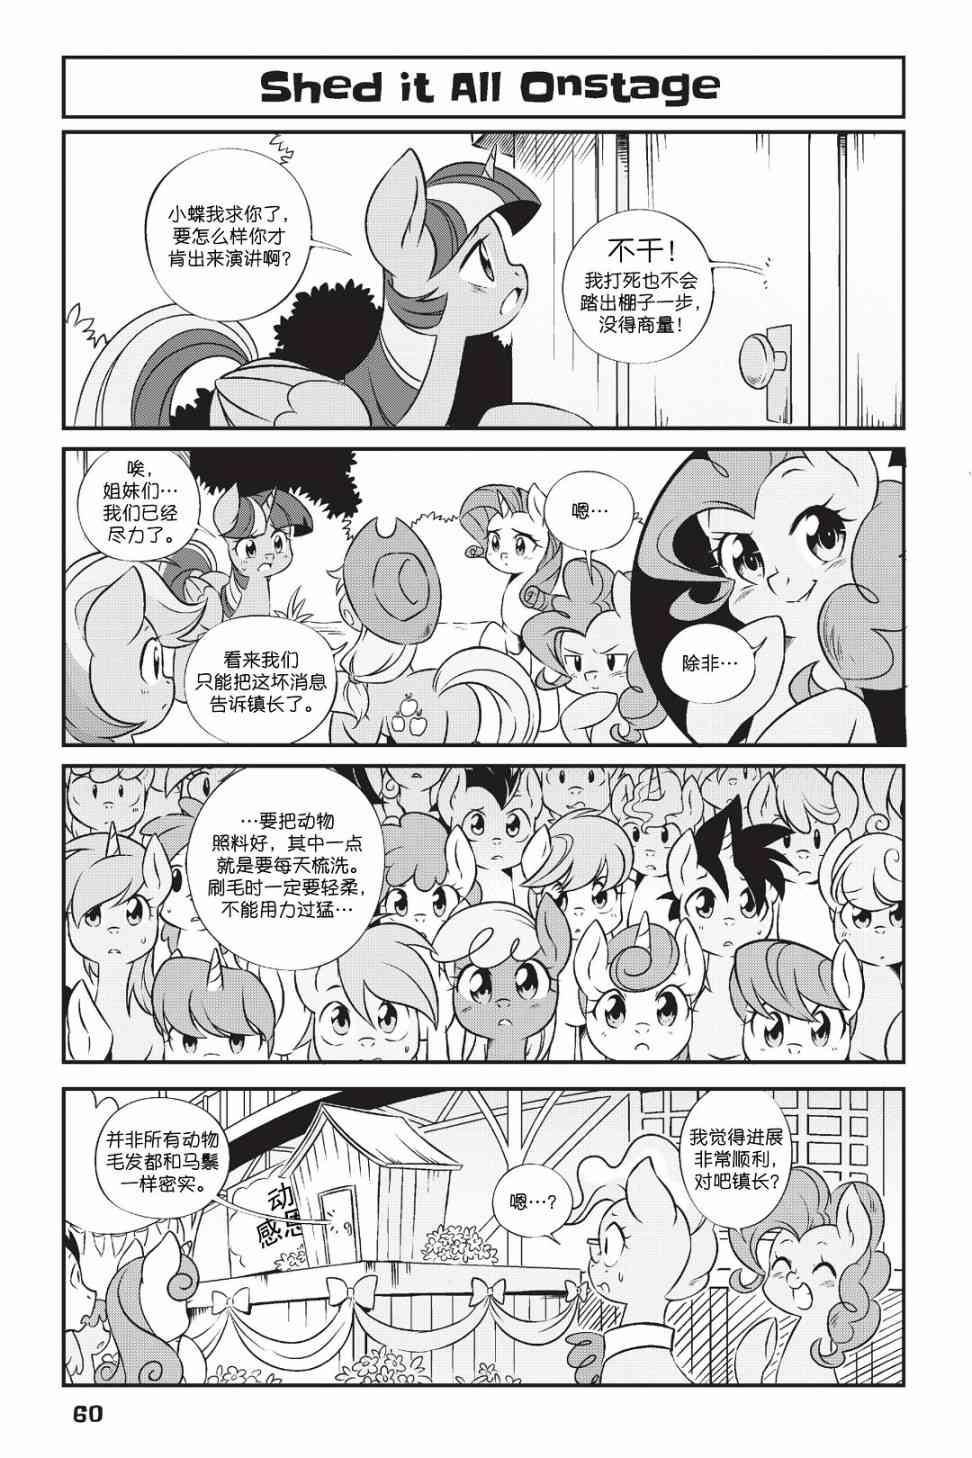 彩虹小马G4：友情就是魔法 - 新日版漫画第01部第04话 - 1